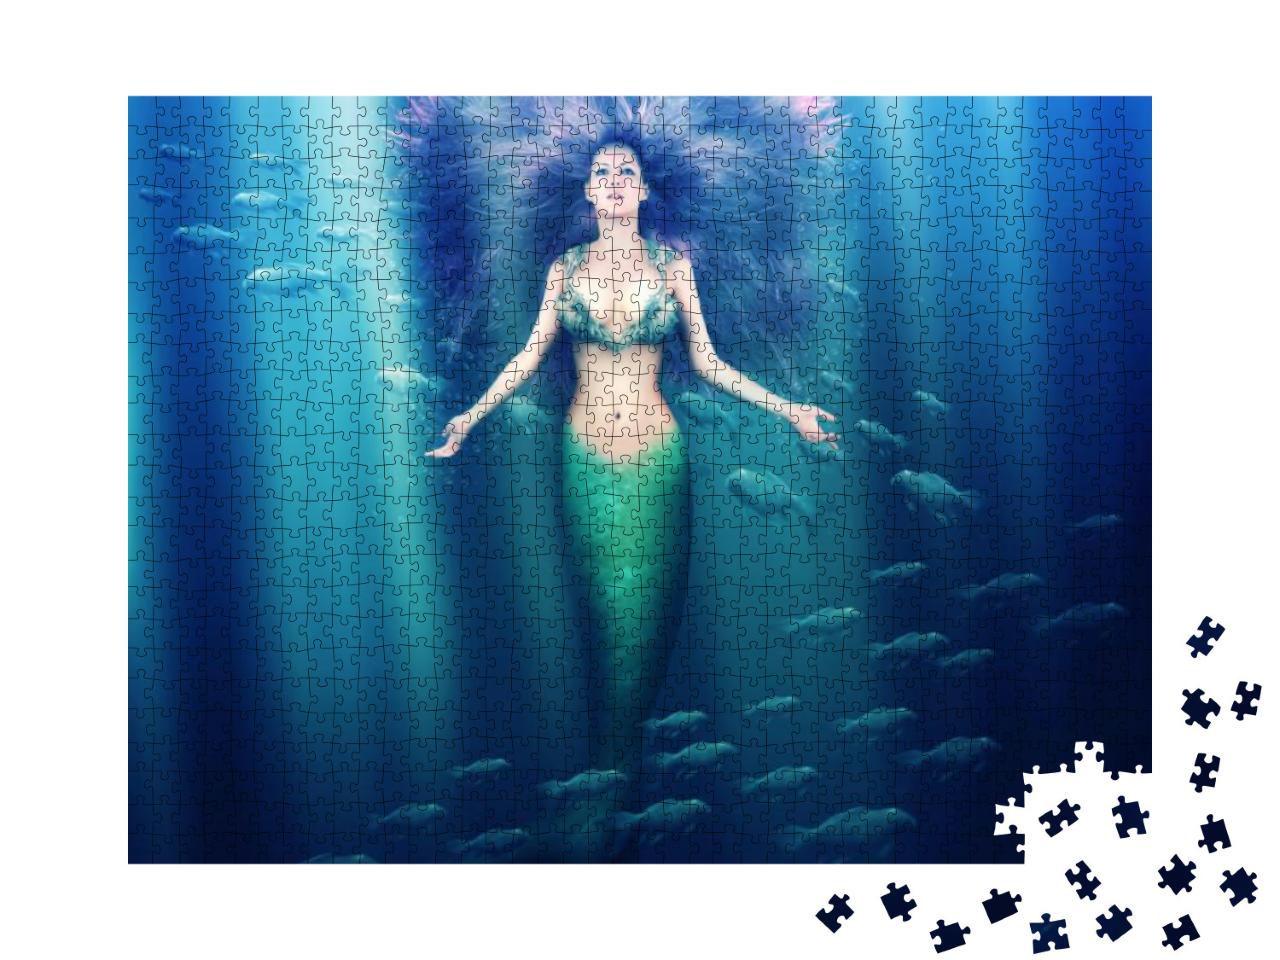 Puzzle 1000 Teile „Fantasy-Meerjungfrau mit fließendem Haar“